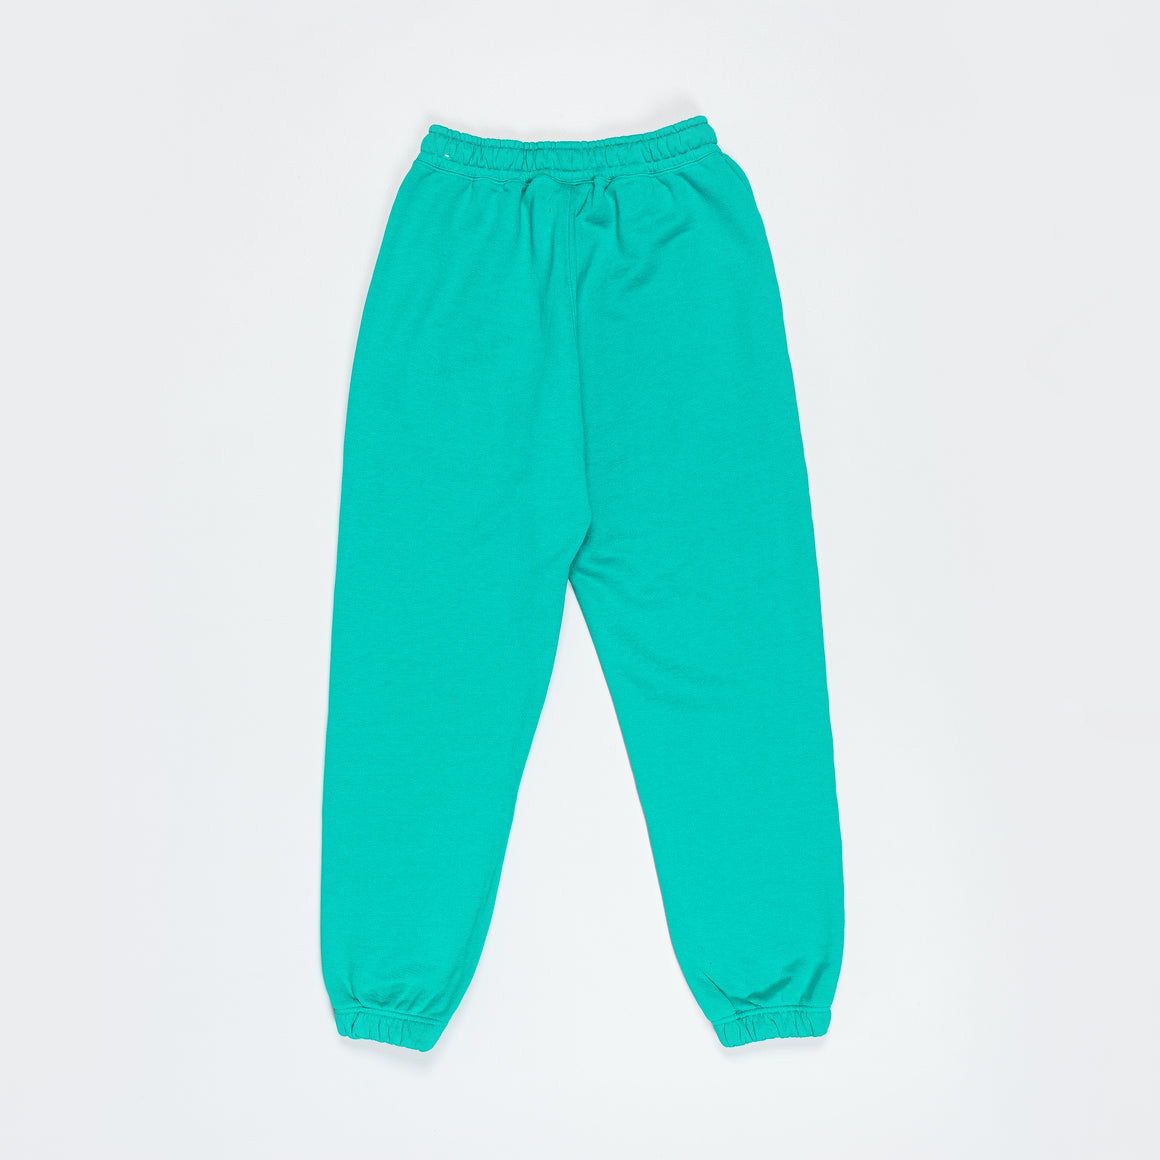 Jordan - Womens Air Jordan SP Fleece Pant - New Emerald/Sail - UP THERE